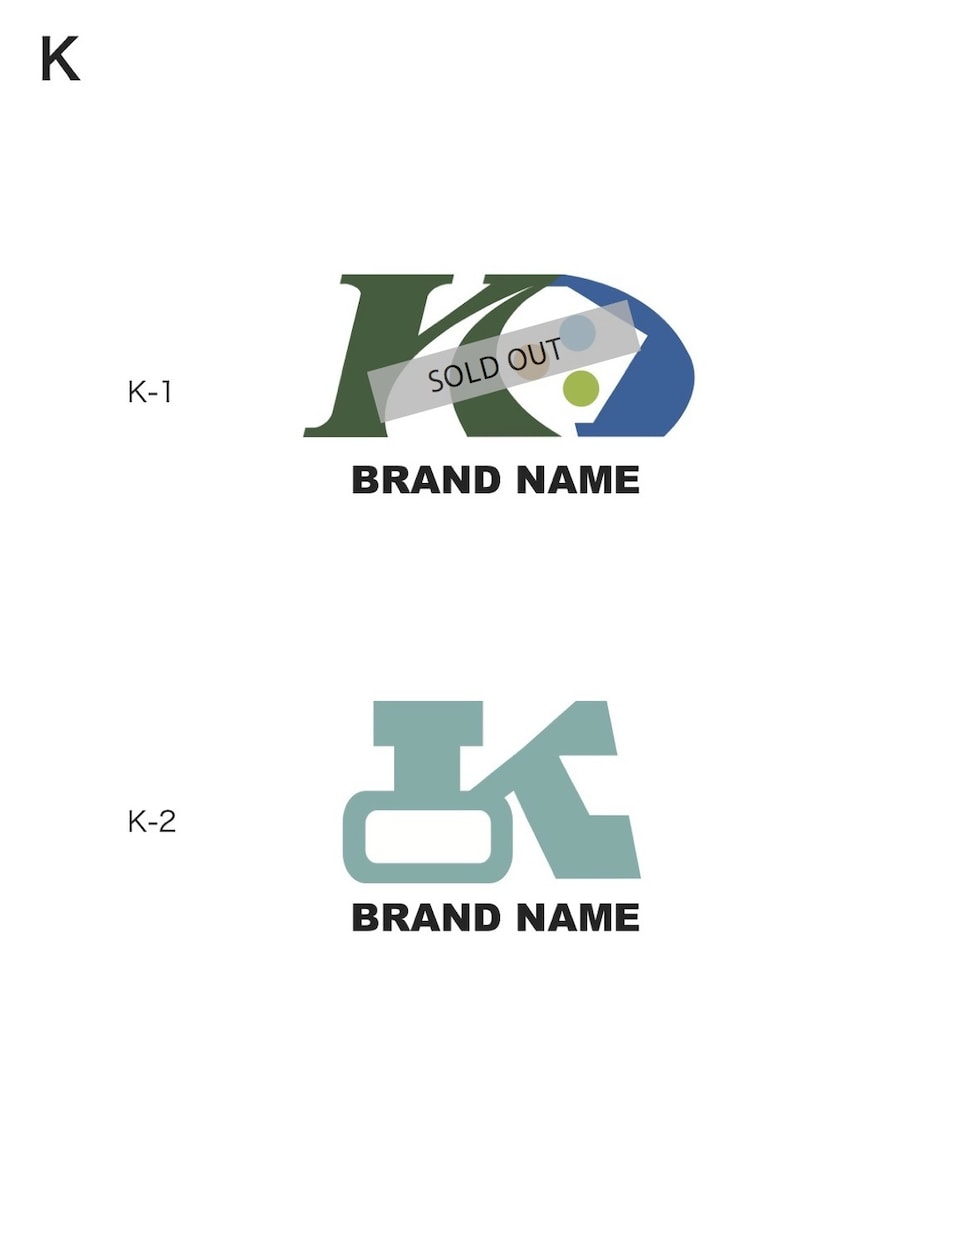 限定!「K」頭文字のブランドロゴ販売します 重機イメージのマークです。メンズフッァションブランドにも! イメージ1